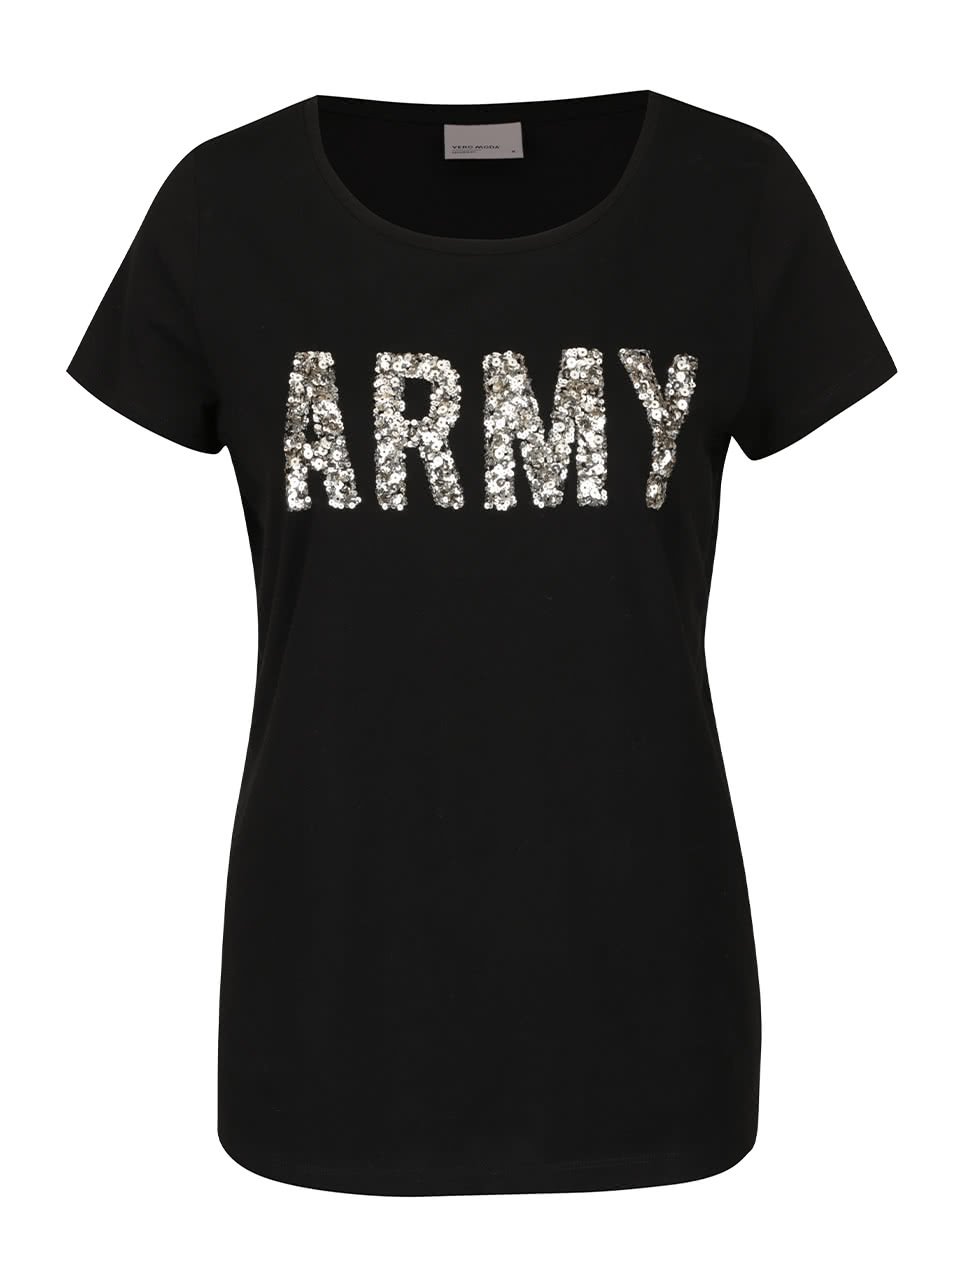 Černé tričko s flitrovou aplikací Vero Moda Army